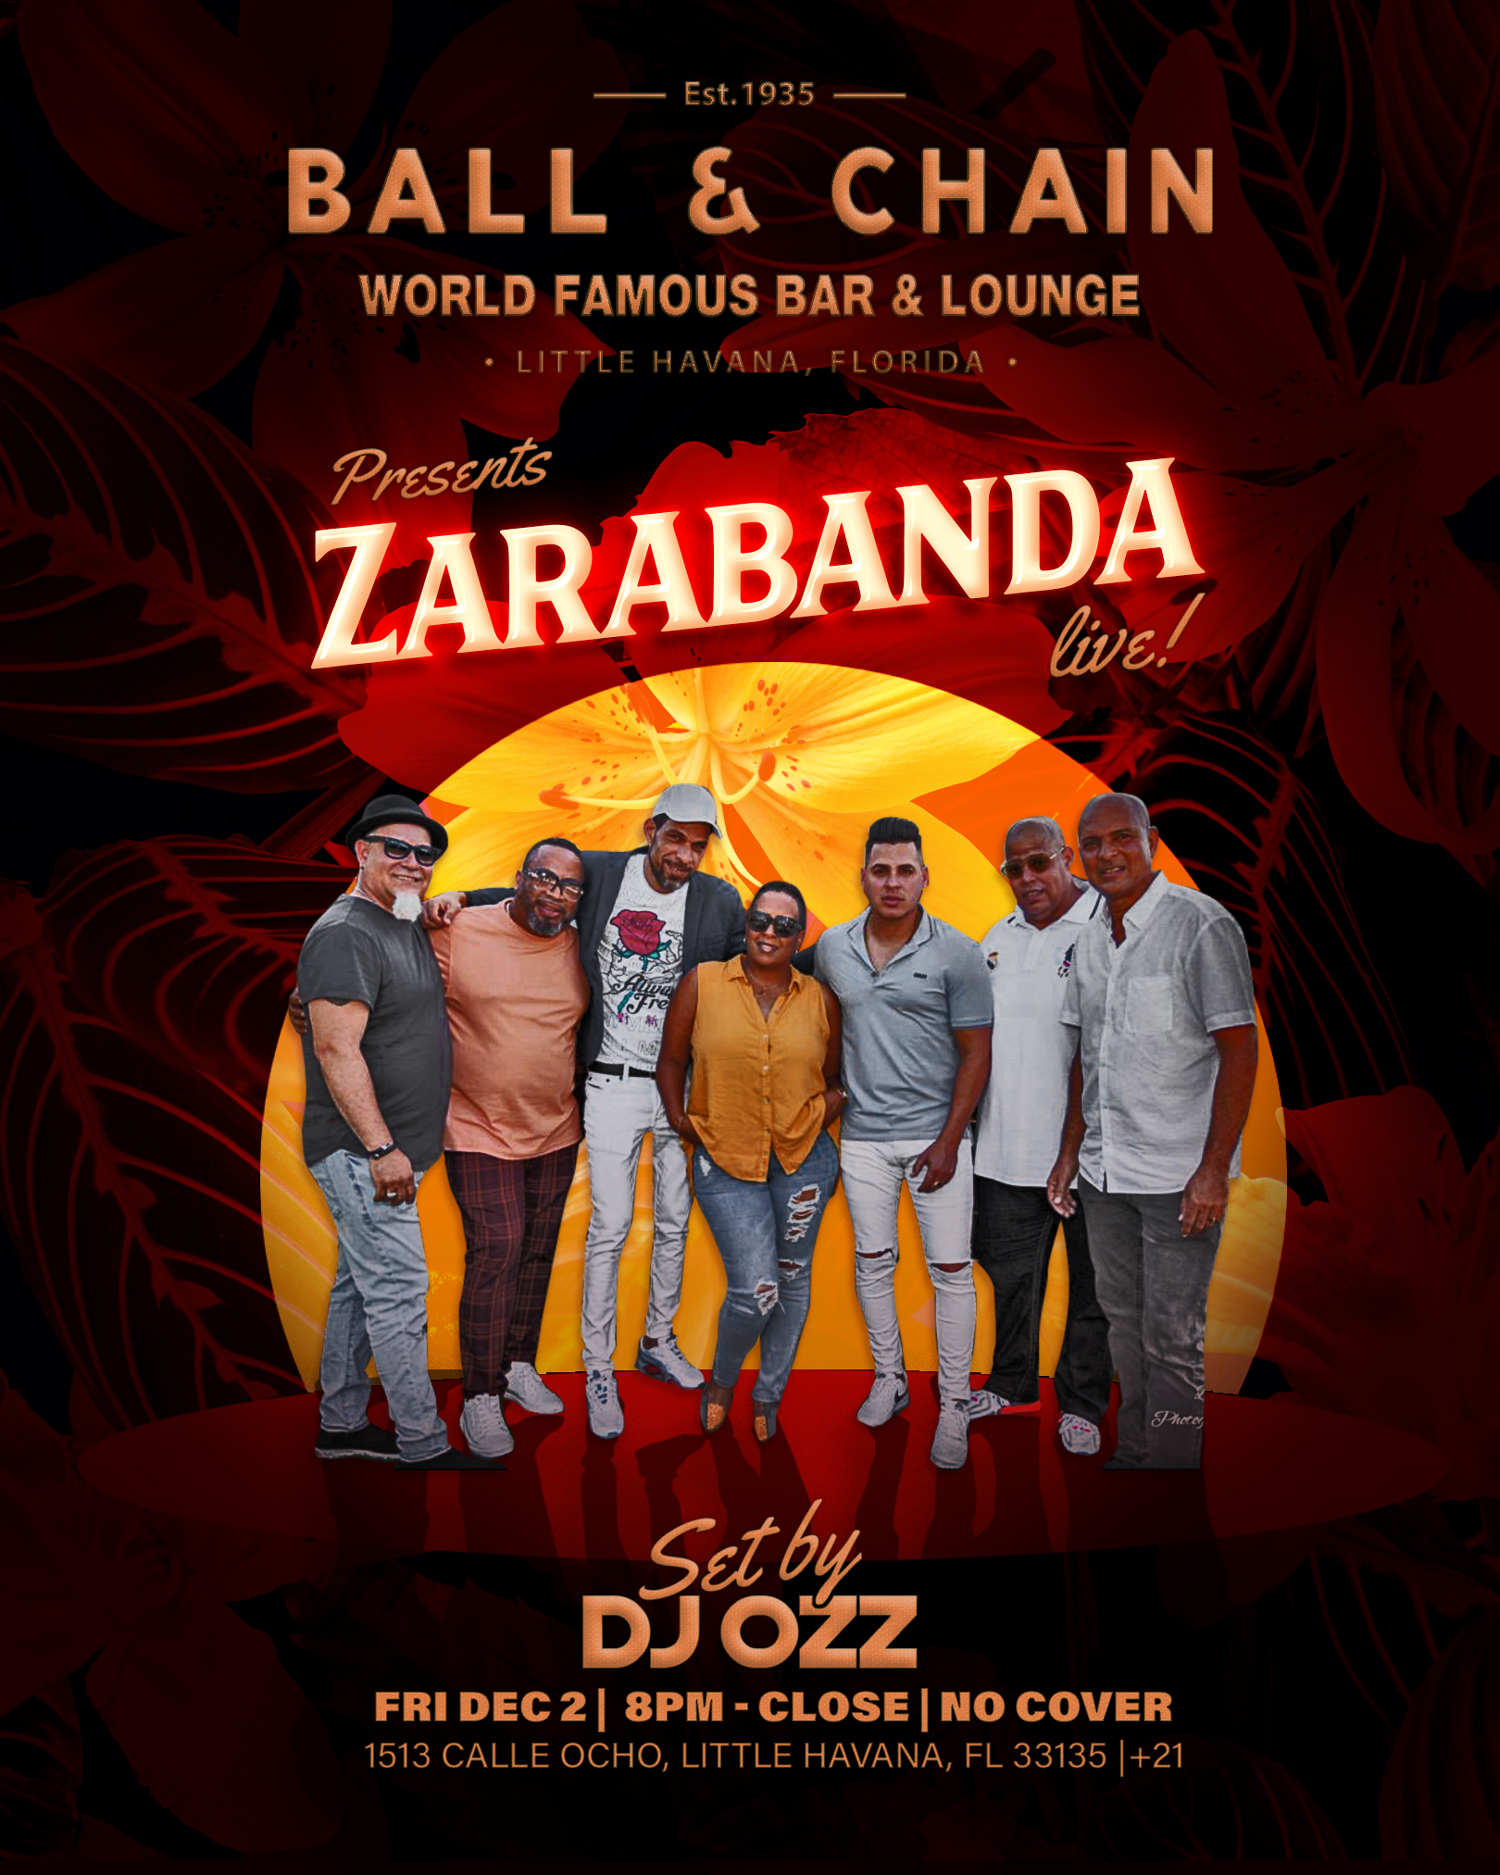 The band Zarabanda